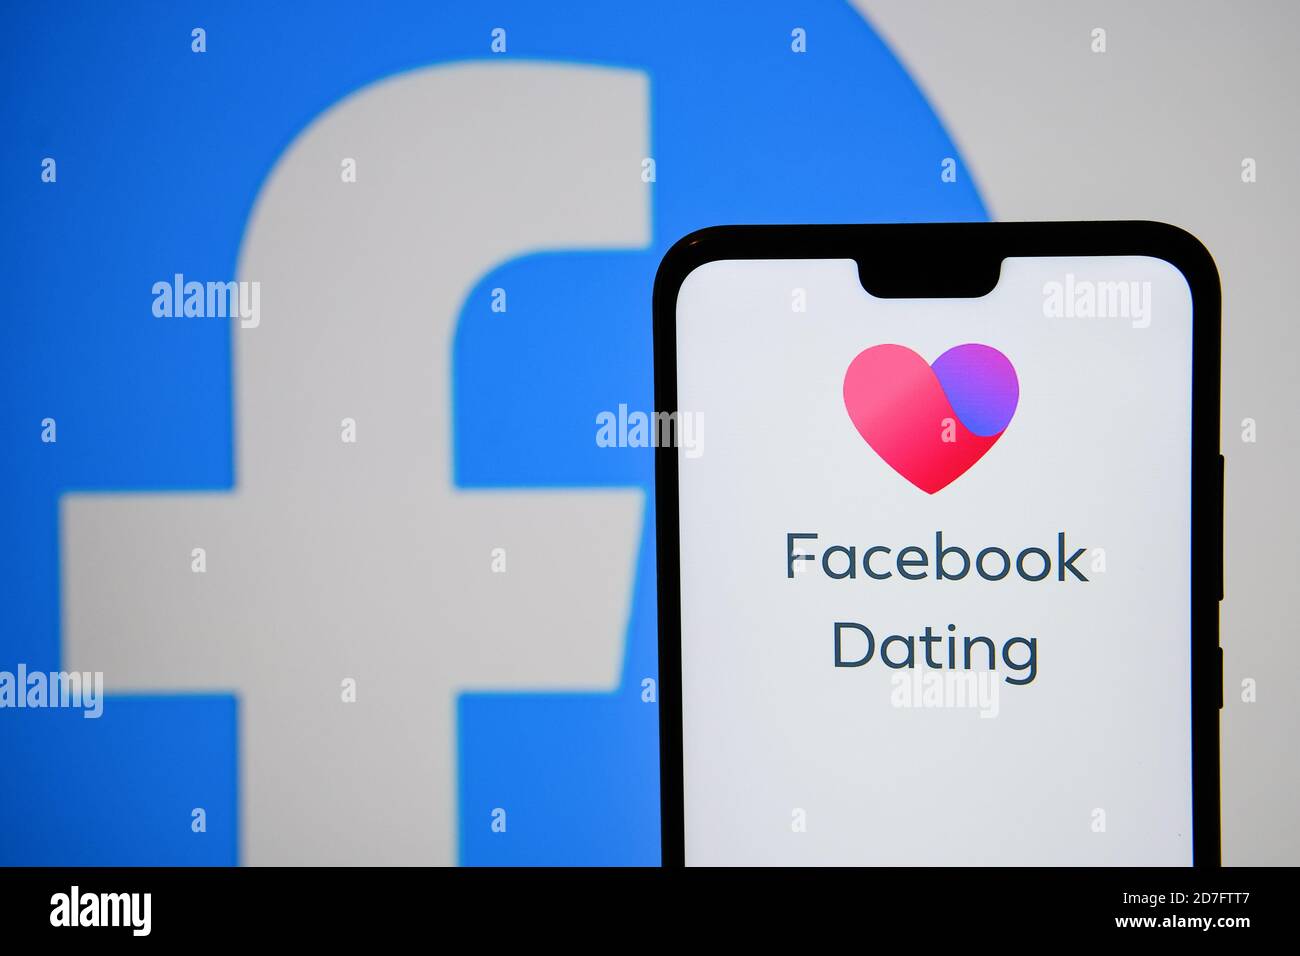 Manchester / Regno Unito - 21 ottobre 2020: Logo dell'app Facebook Dating visualizzato sullo schermo dello smartphone accanto al logo Facebook. Nessuna modifica nel post. Non un Foto Stock